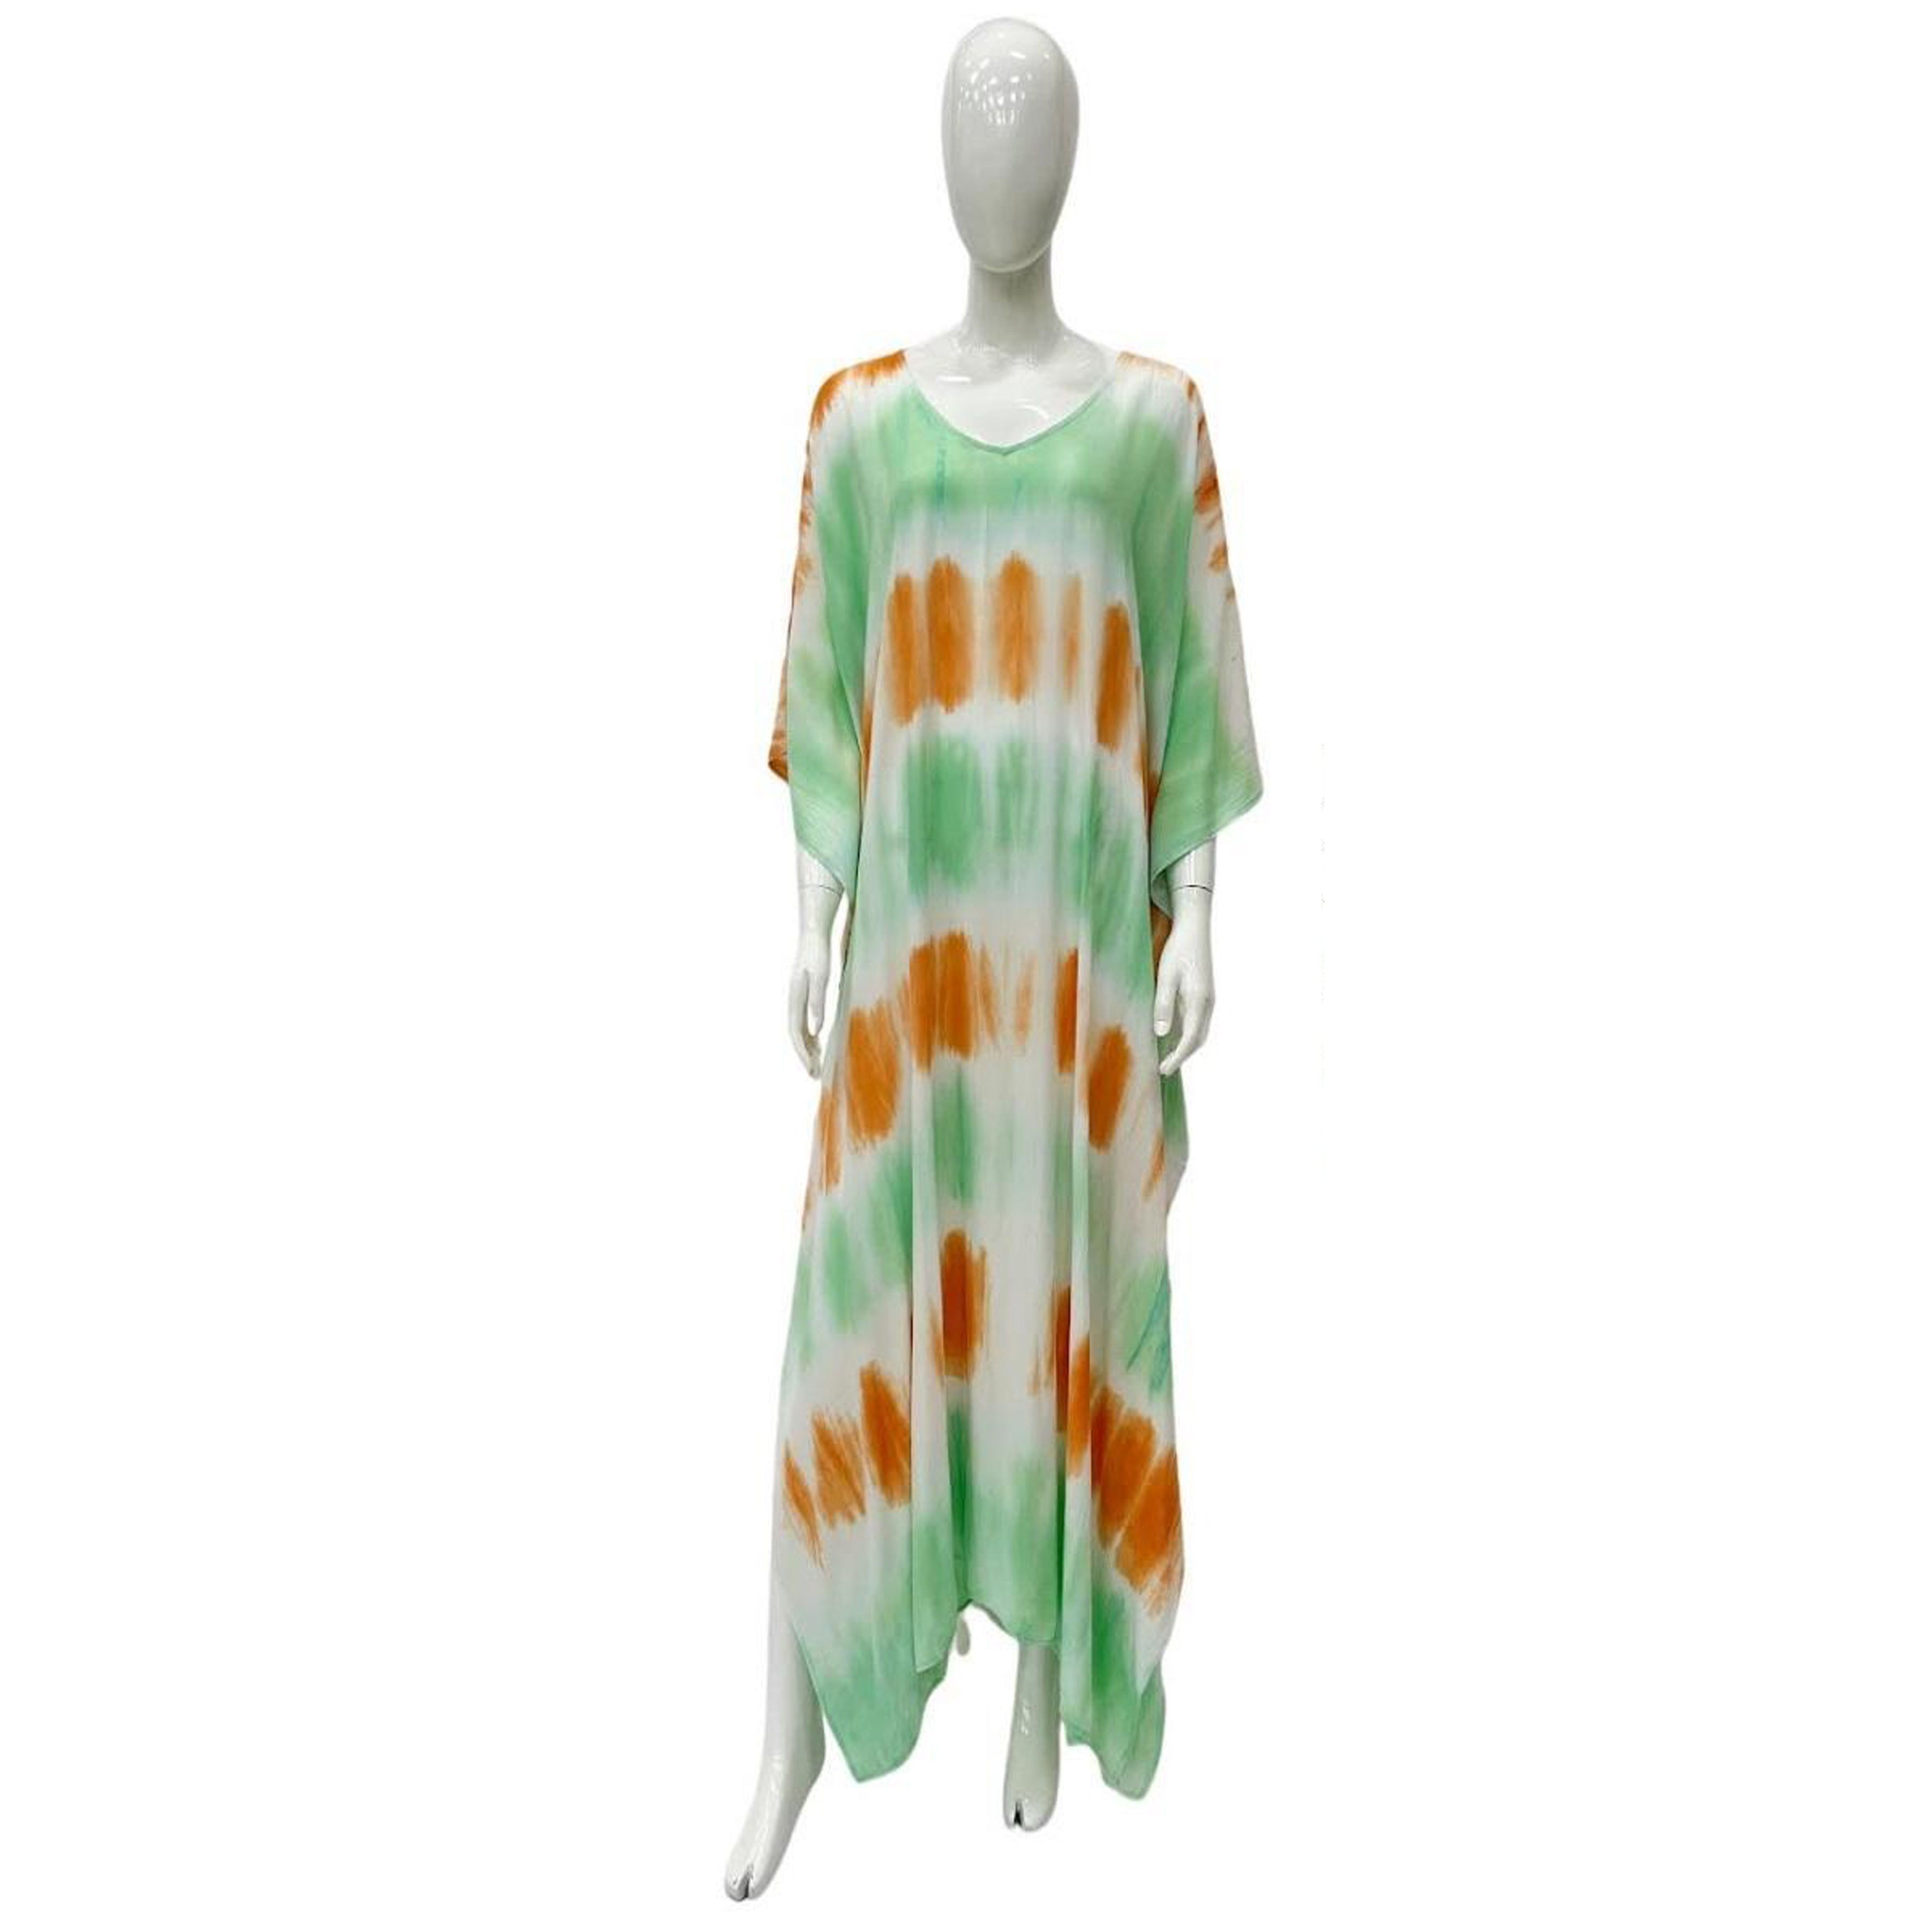 Wholesale Women's DRESSes Rayon Tie Dye Long Over Size DRESS 140Gms Asst 3C 6-36-Case S-M-L-Xl Hana 